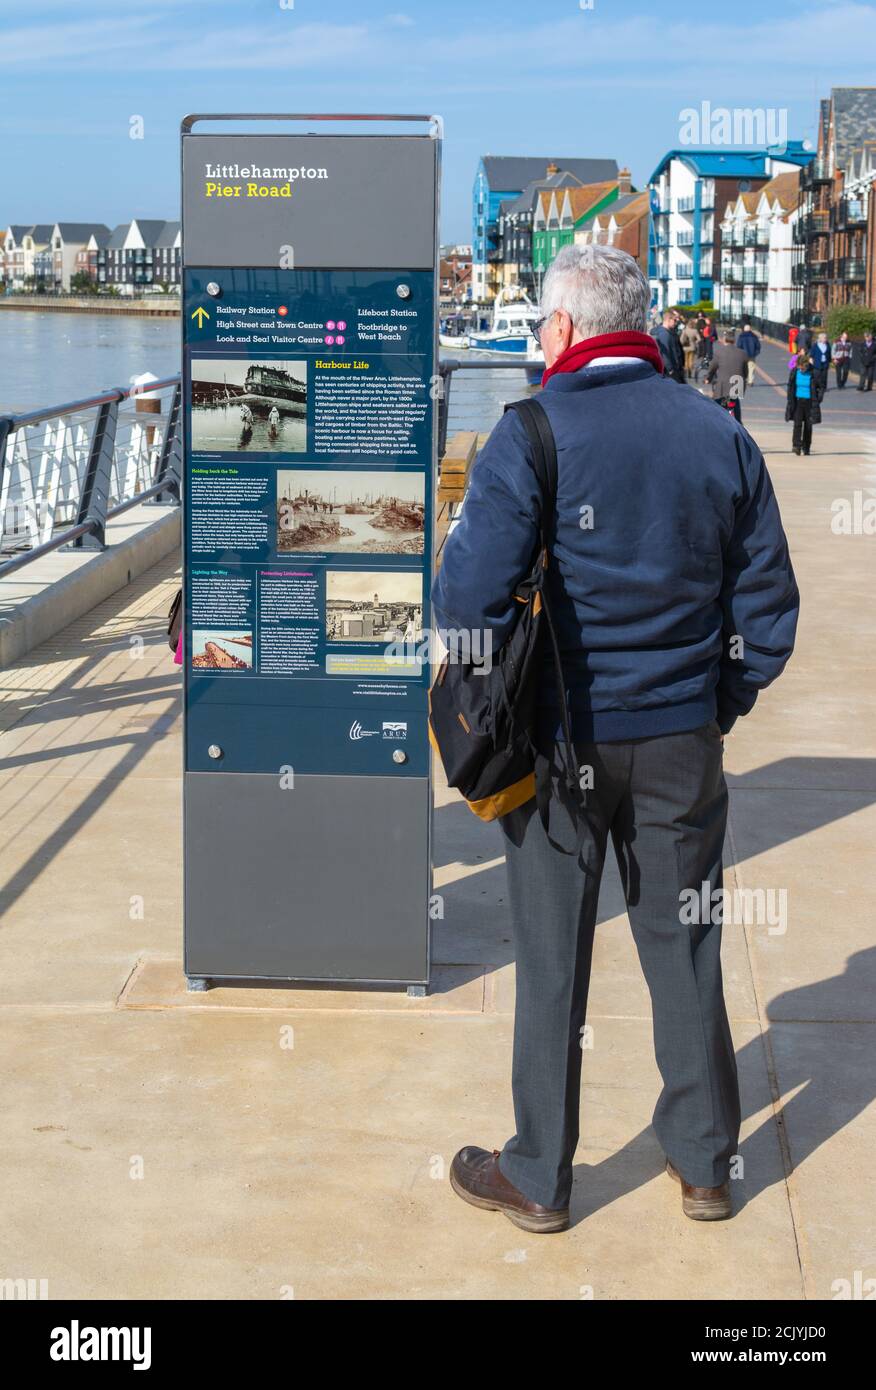 Homme debout près d'un panneau d'information montrant des informations historiques sur Littlehampton, sur le chemin de halage de Pier Road, Littlehampton, West Sussex, Angleterre, Royaume-Uni. Banque D'Images